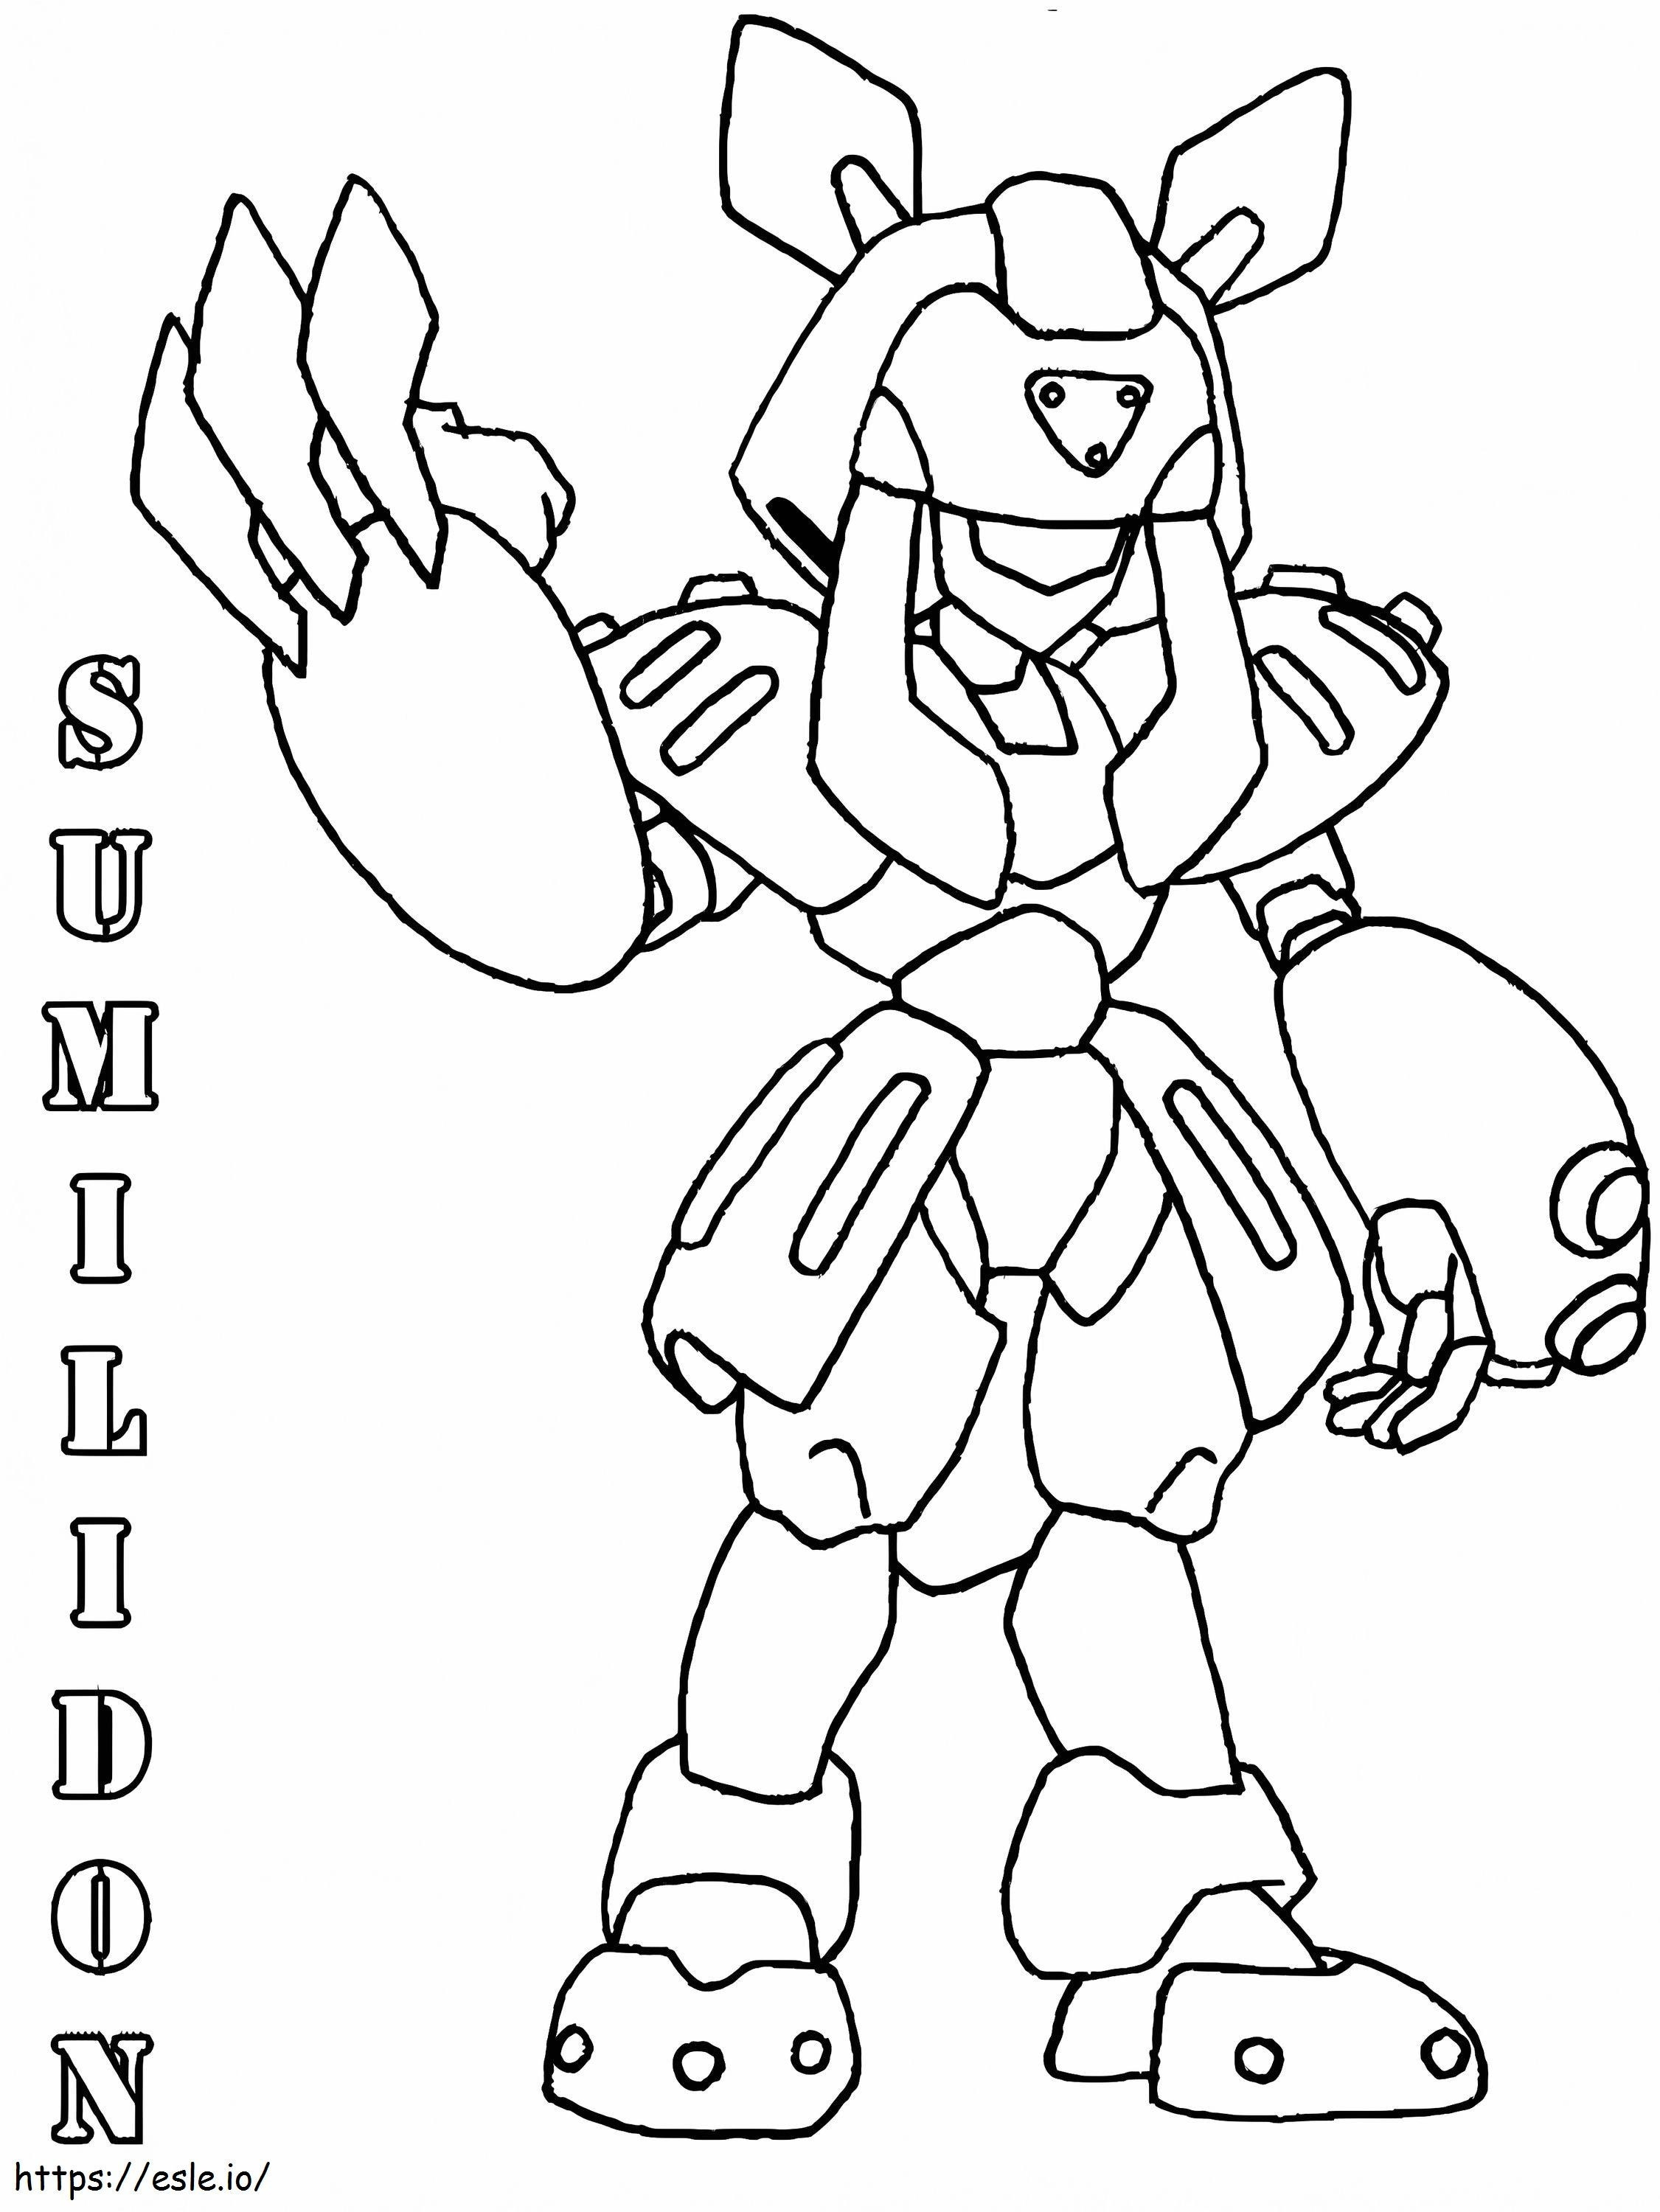 Sumilidon Medabots coloring page